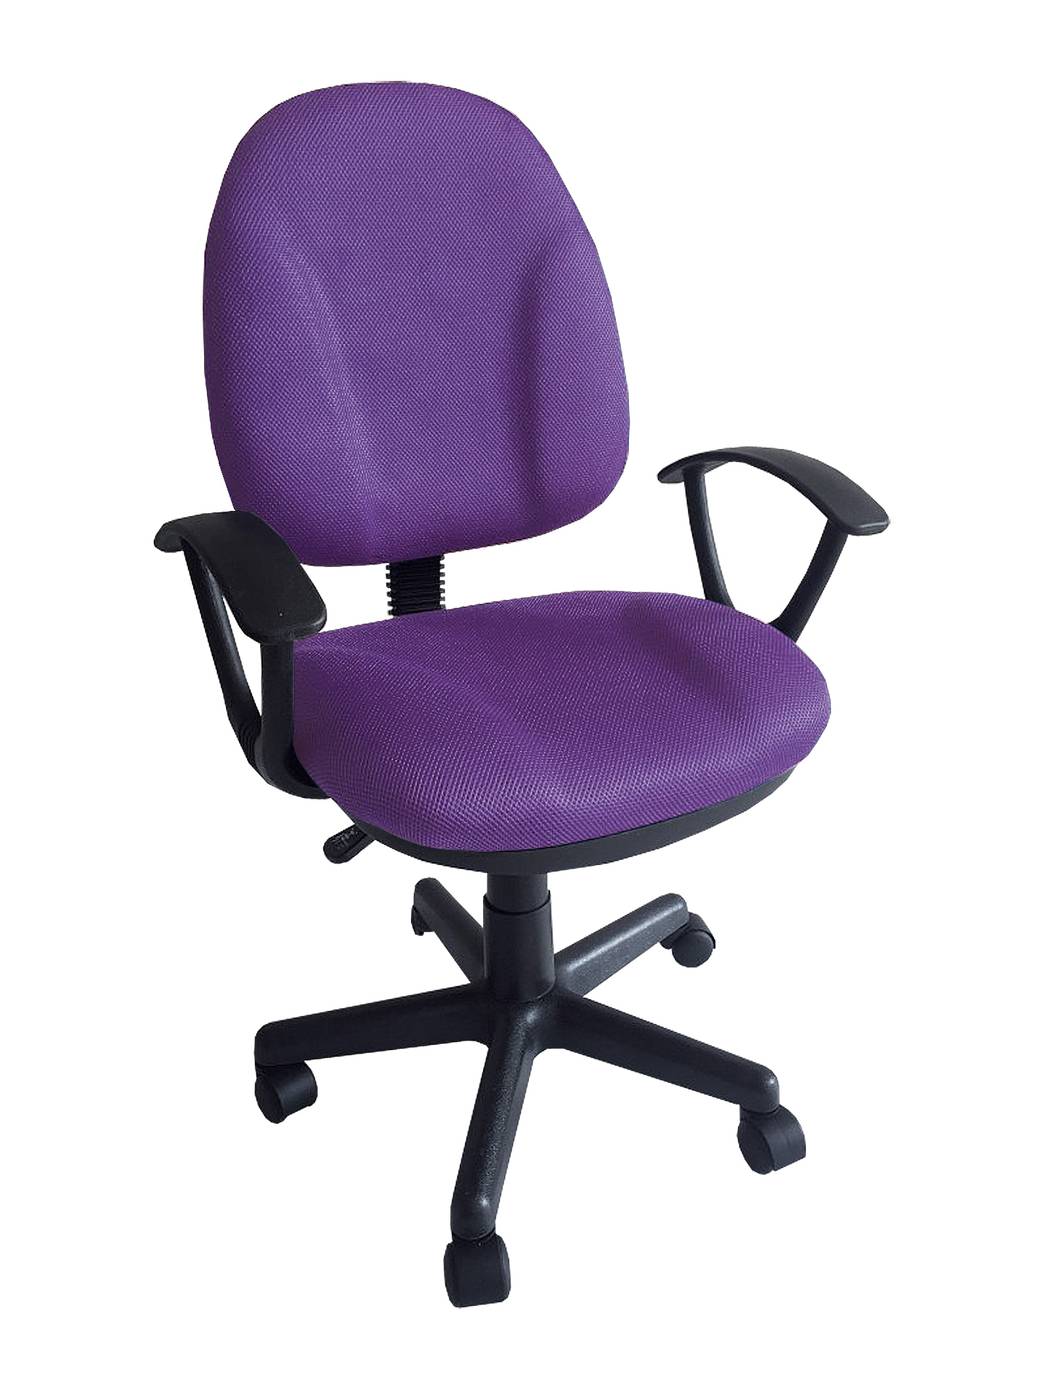 Silla giratoria para escritorio juvenil, con ruedas, elevable, con asiento y respaldo tapizado con tejido 3D color violeta